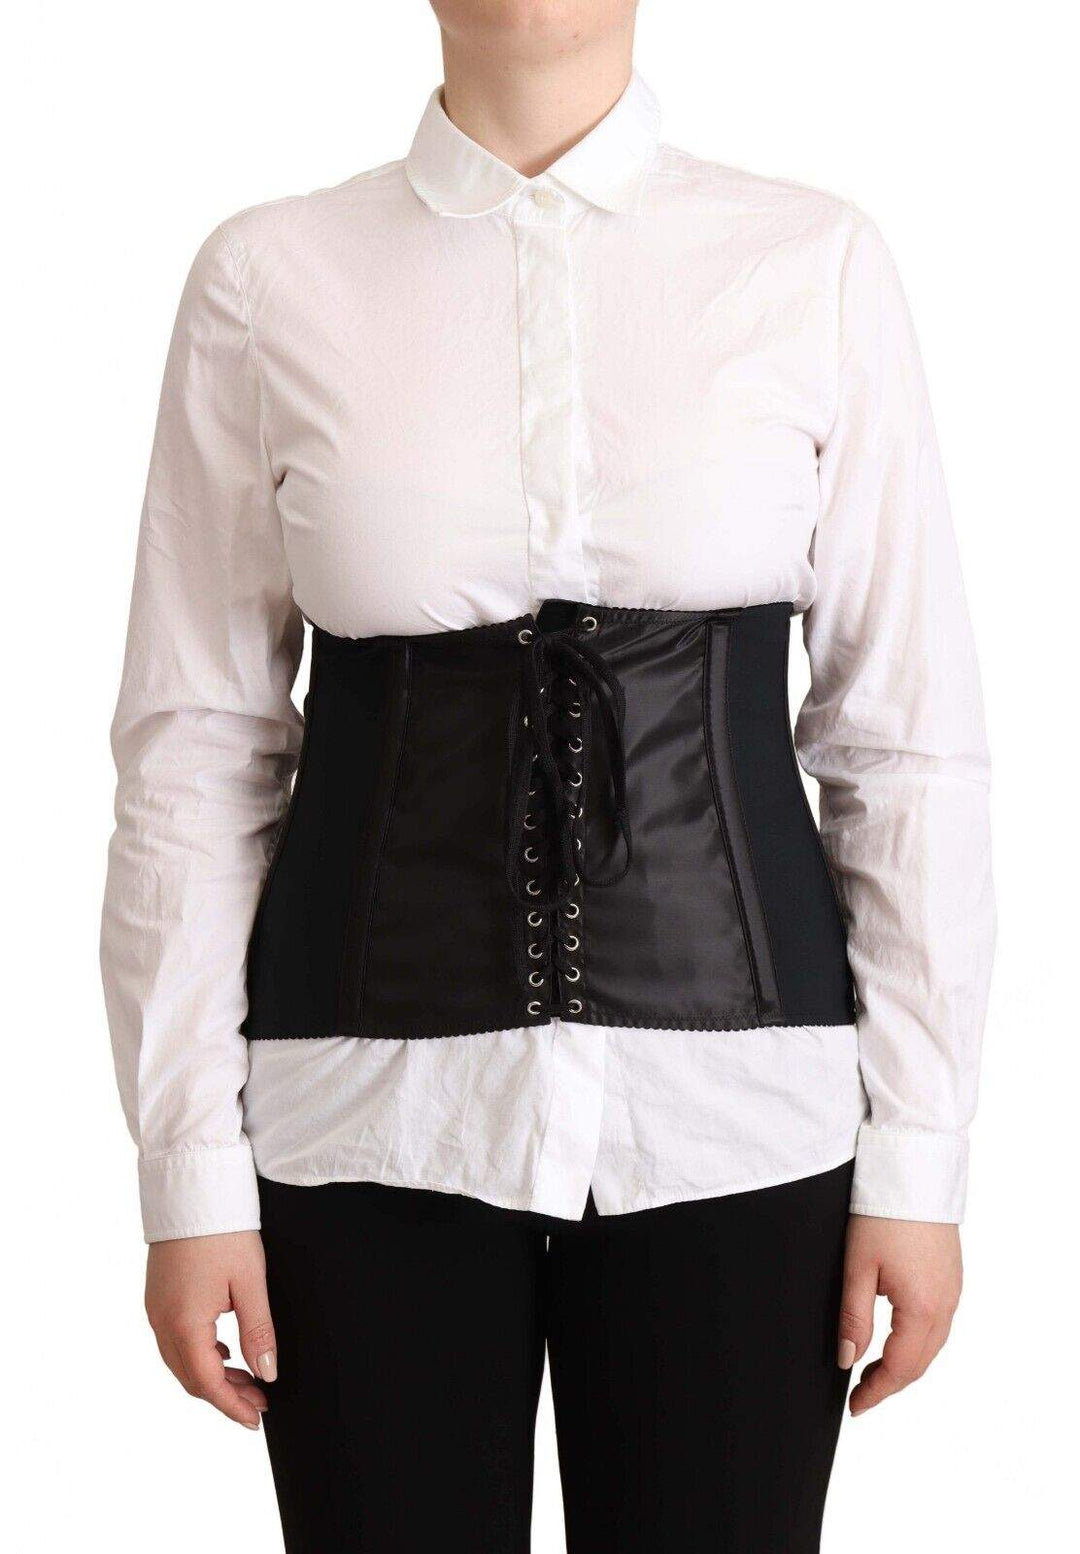 Dolce & Gabbana Black Corset Belt Stretch Waist Strap Top Black, Dolce & Gabbana, feed-1, IT42|M, IT44|L, Tops & T-Shirts - Women - Clothing at SEYMAYKA